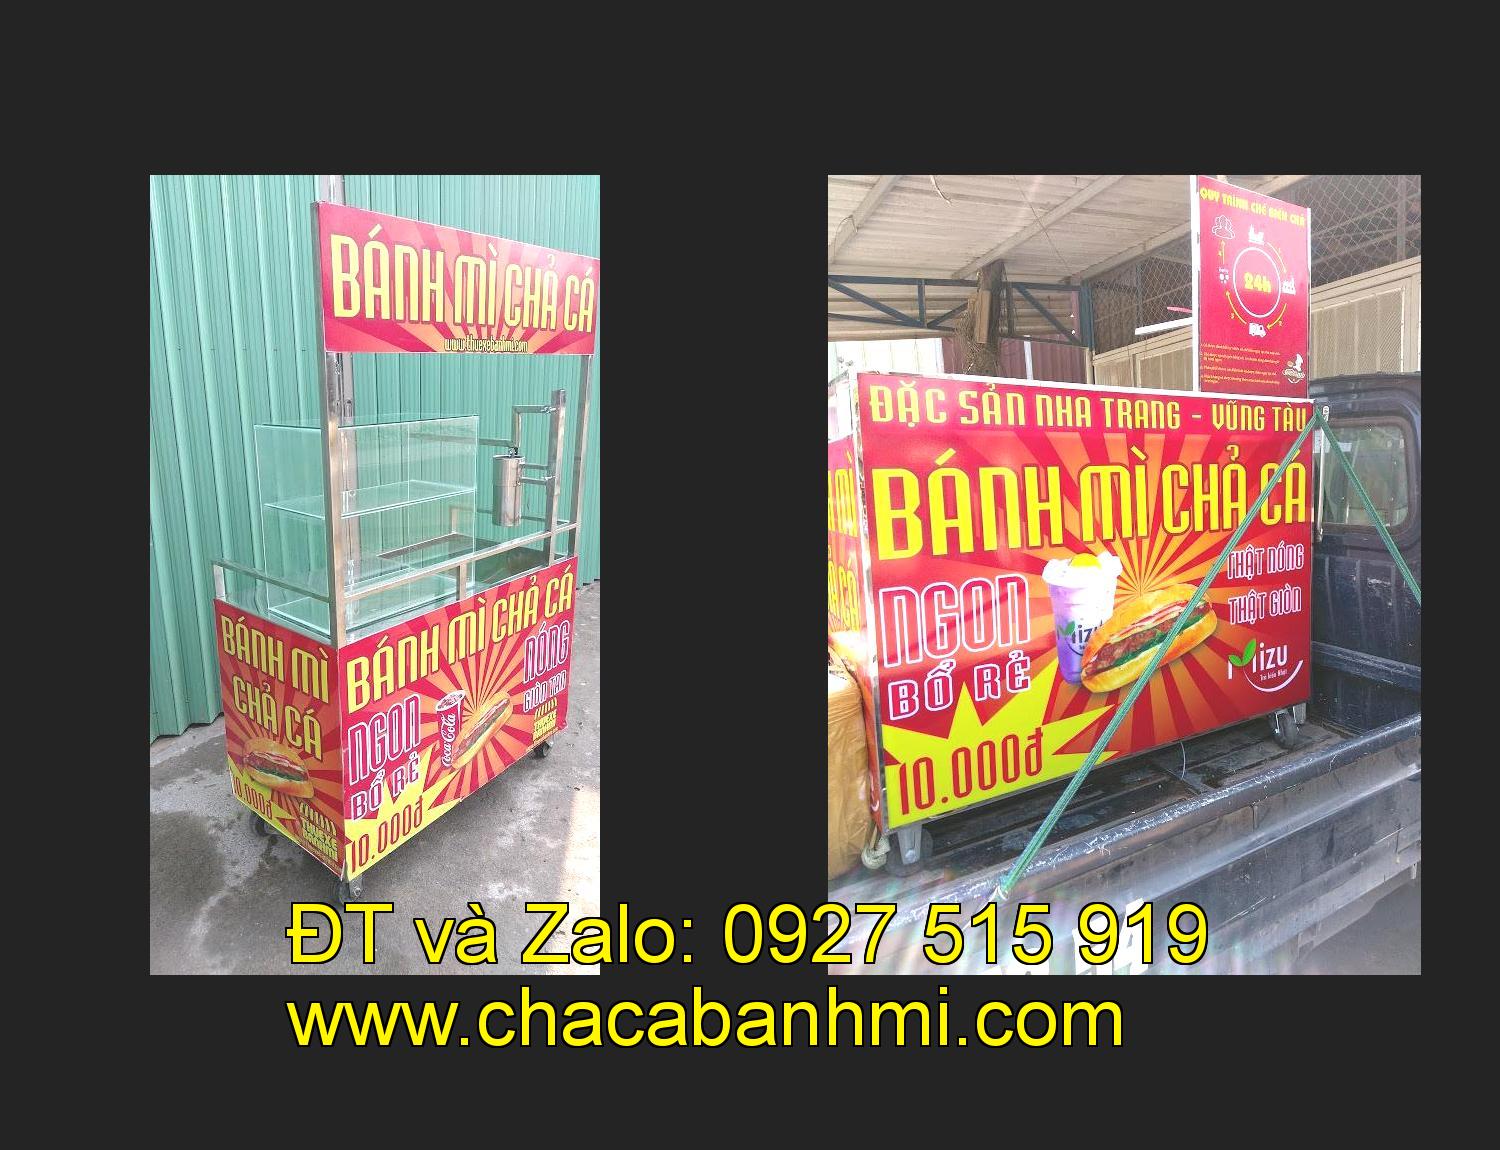 Bán xe bánh mì chả cá tại tỉnh Đồng Tháp